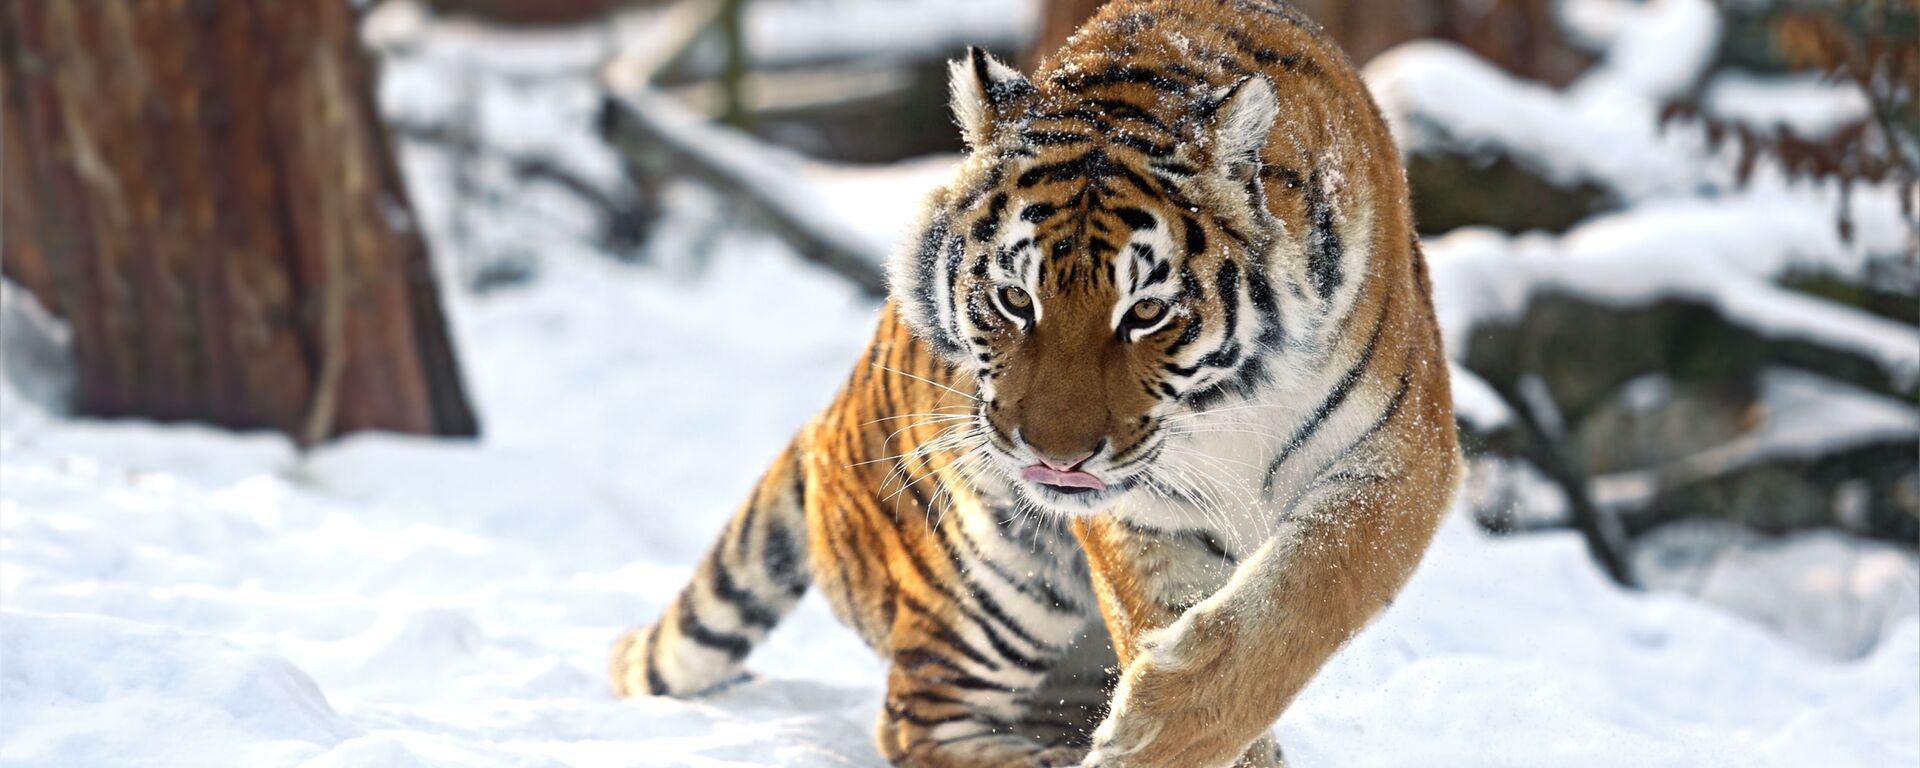 Амурский тигр зимой - Sputnik Ўзбекистон, 1920, 21.10.2021